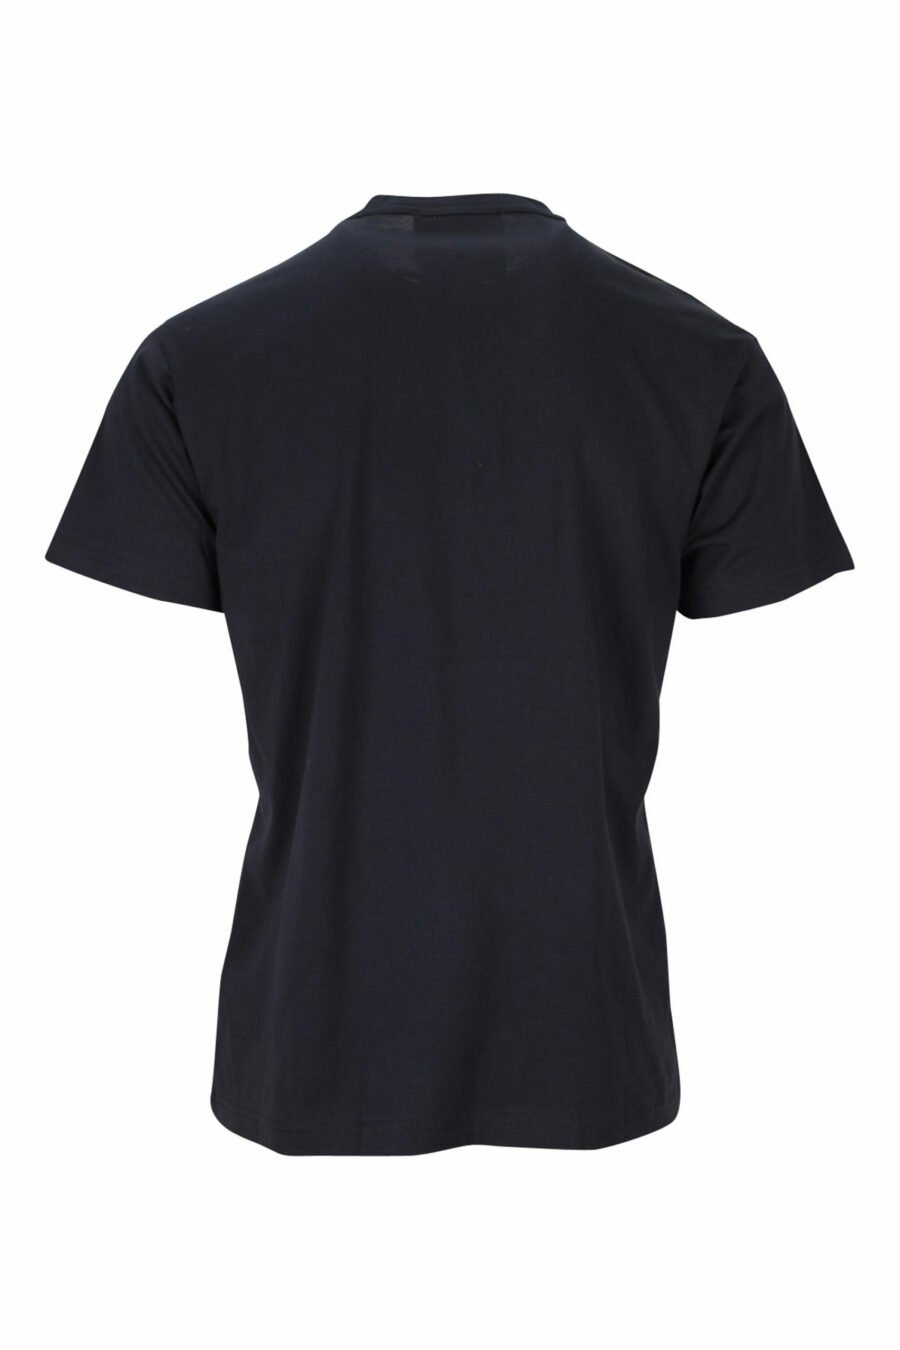 Black T-shirt with red dog maxilogo - 8052019475180 1 scaled